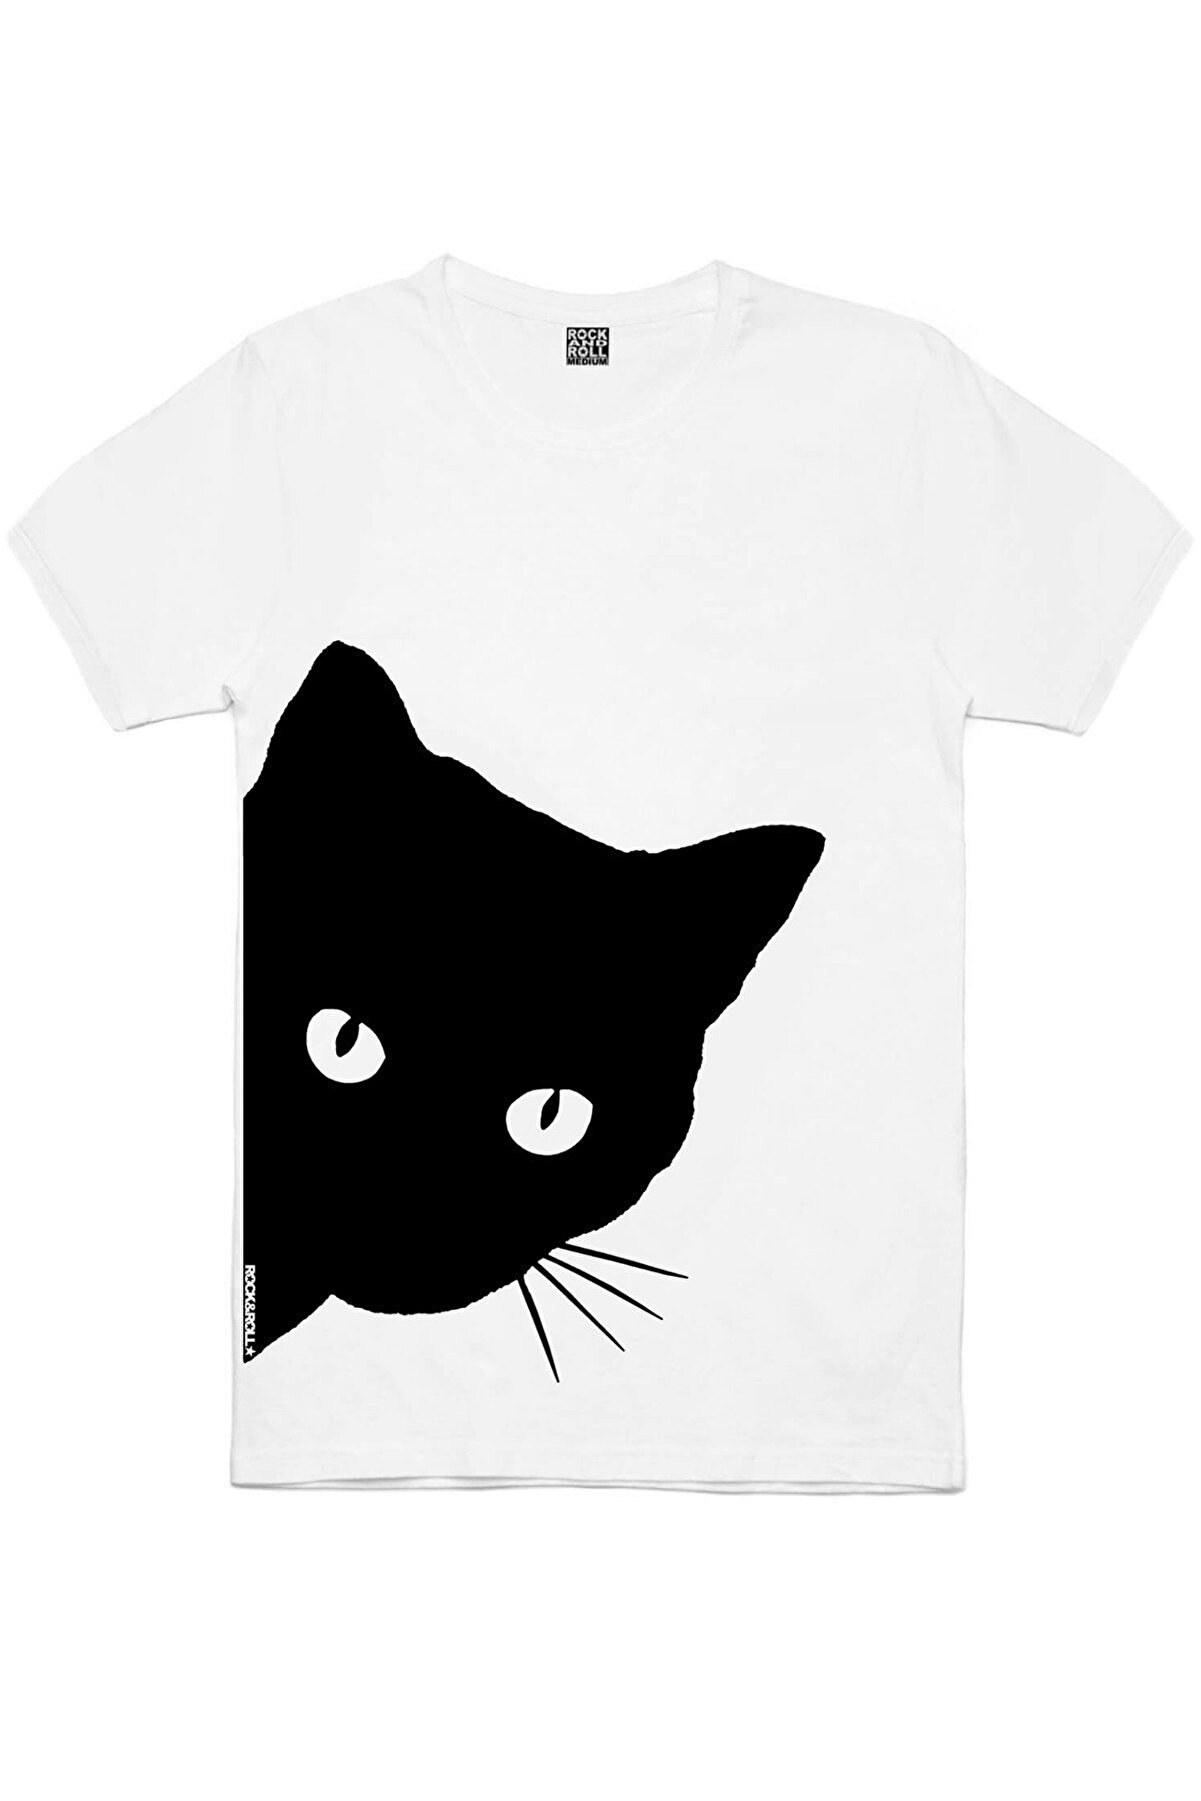 Kasklı Kedi, Meraklı, Panda Taklası Kadın 3'lü Eko Paket T-shirt